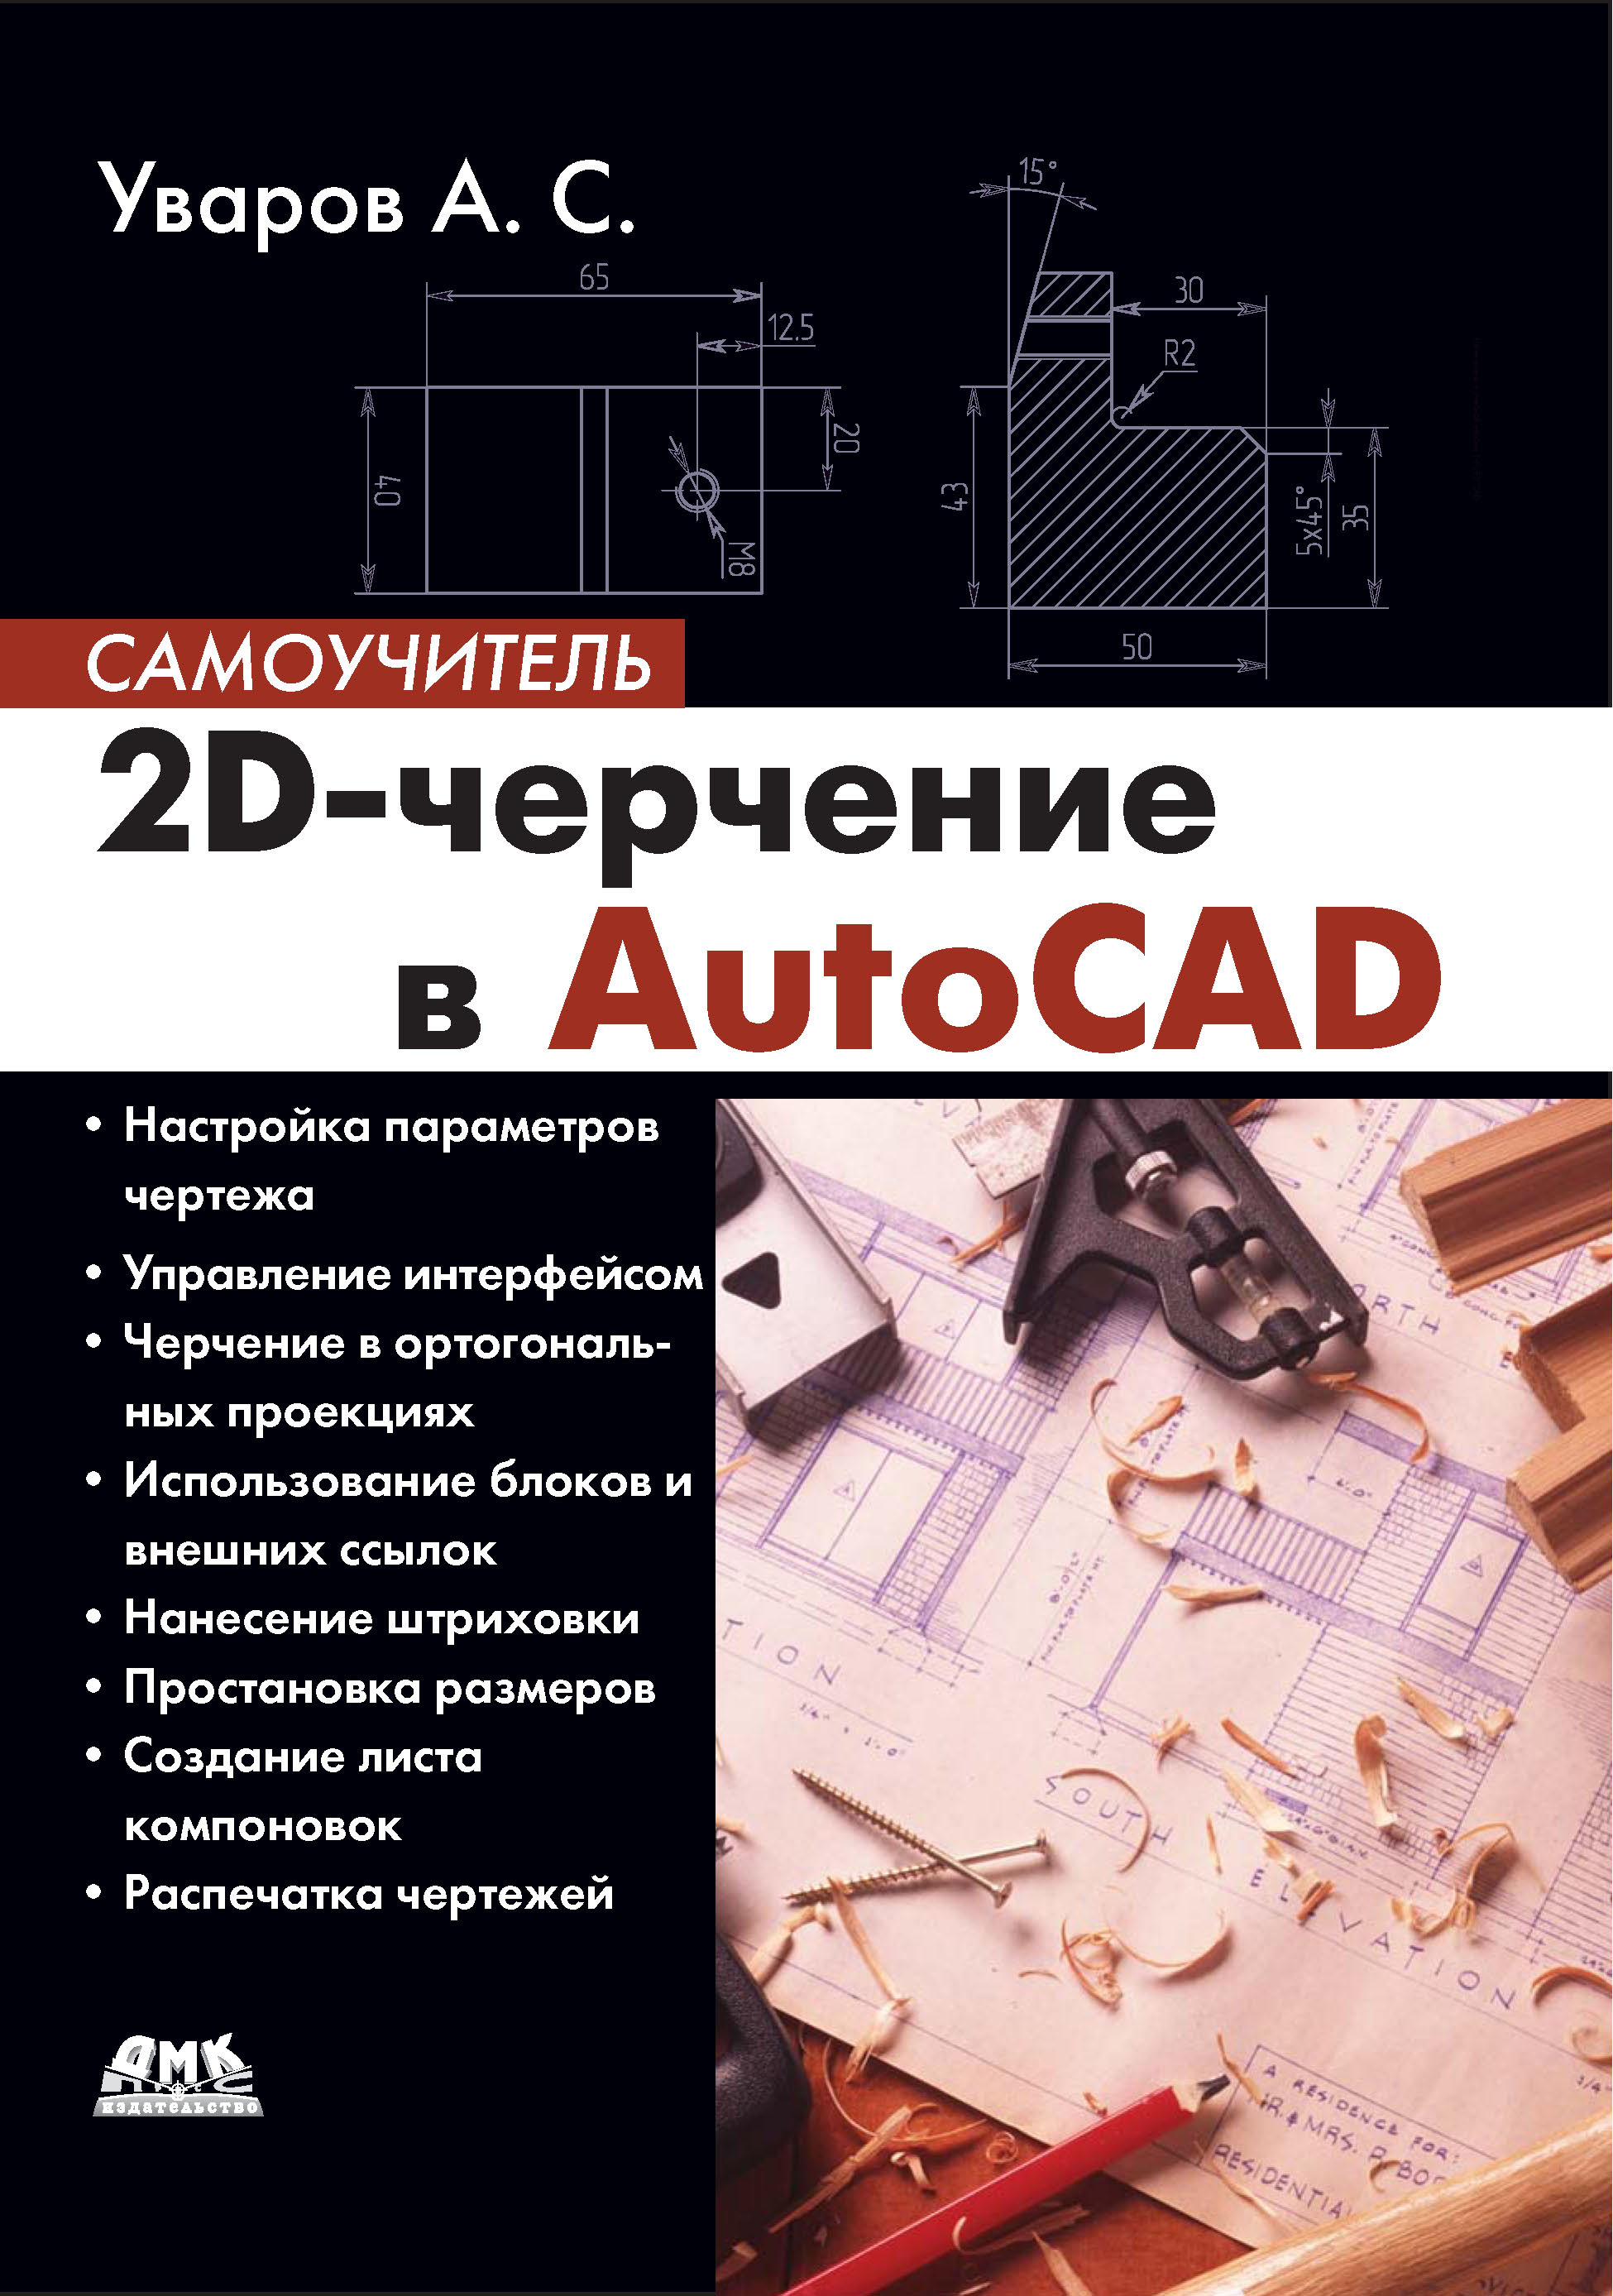 Книга Самоучитель (ДМК Пресс) 2D-черчение в AutoCAD созданная А. С. Уваров может относится к жанру программы, проектирование, самоучители. Стоимость электронной книги 2D-черчение в AutoCAD с идентификатором 22780518 составляет 151.00 руб.